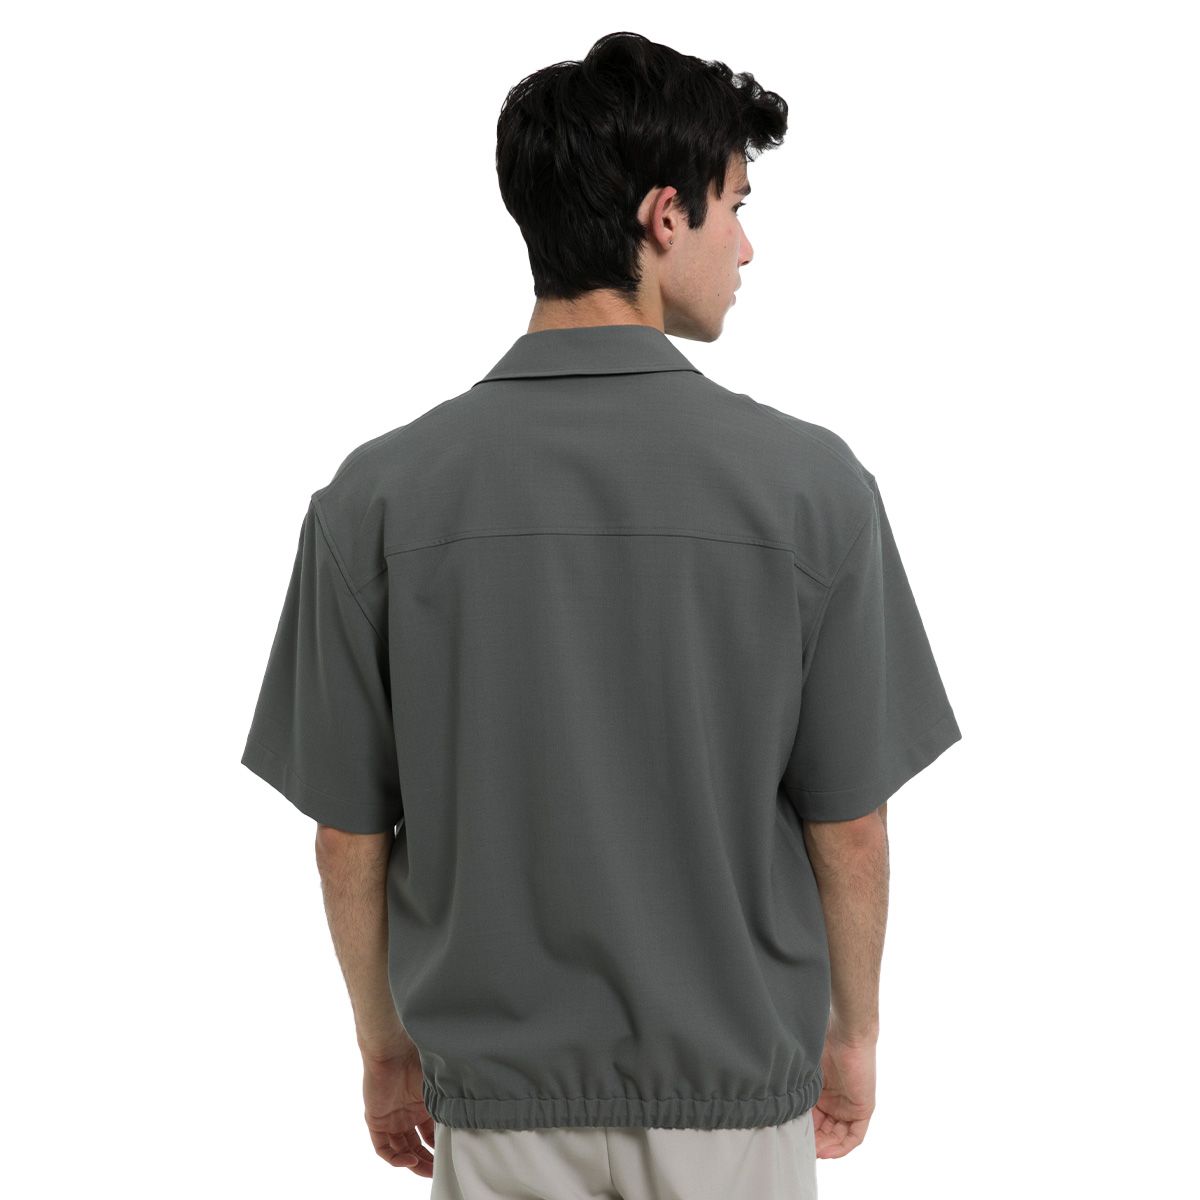 Navy Short-Sleeved Shirt